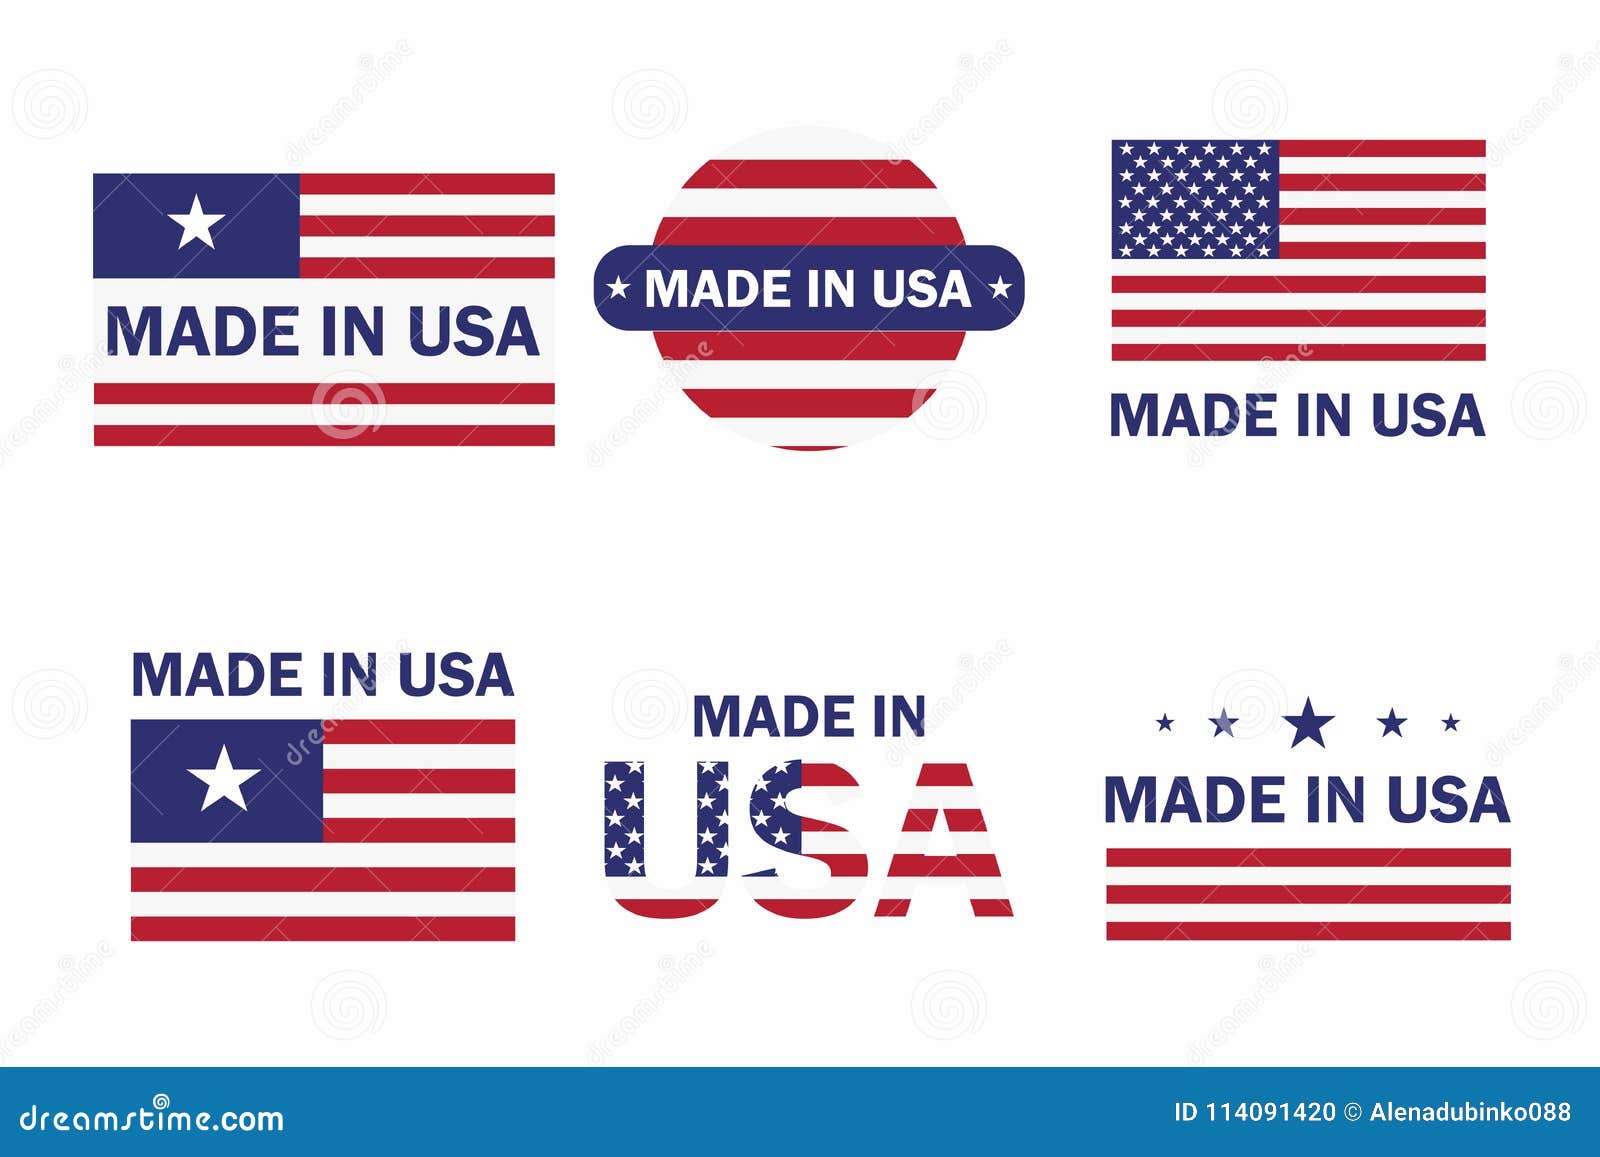 Как переводится америка. USA перевод. Этикетка флаг США. Как переводится США. Продукты Америки с американской этикеткой.